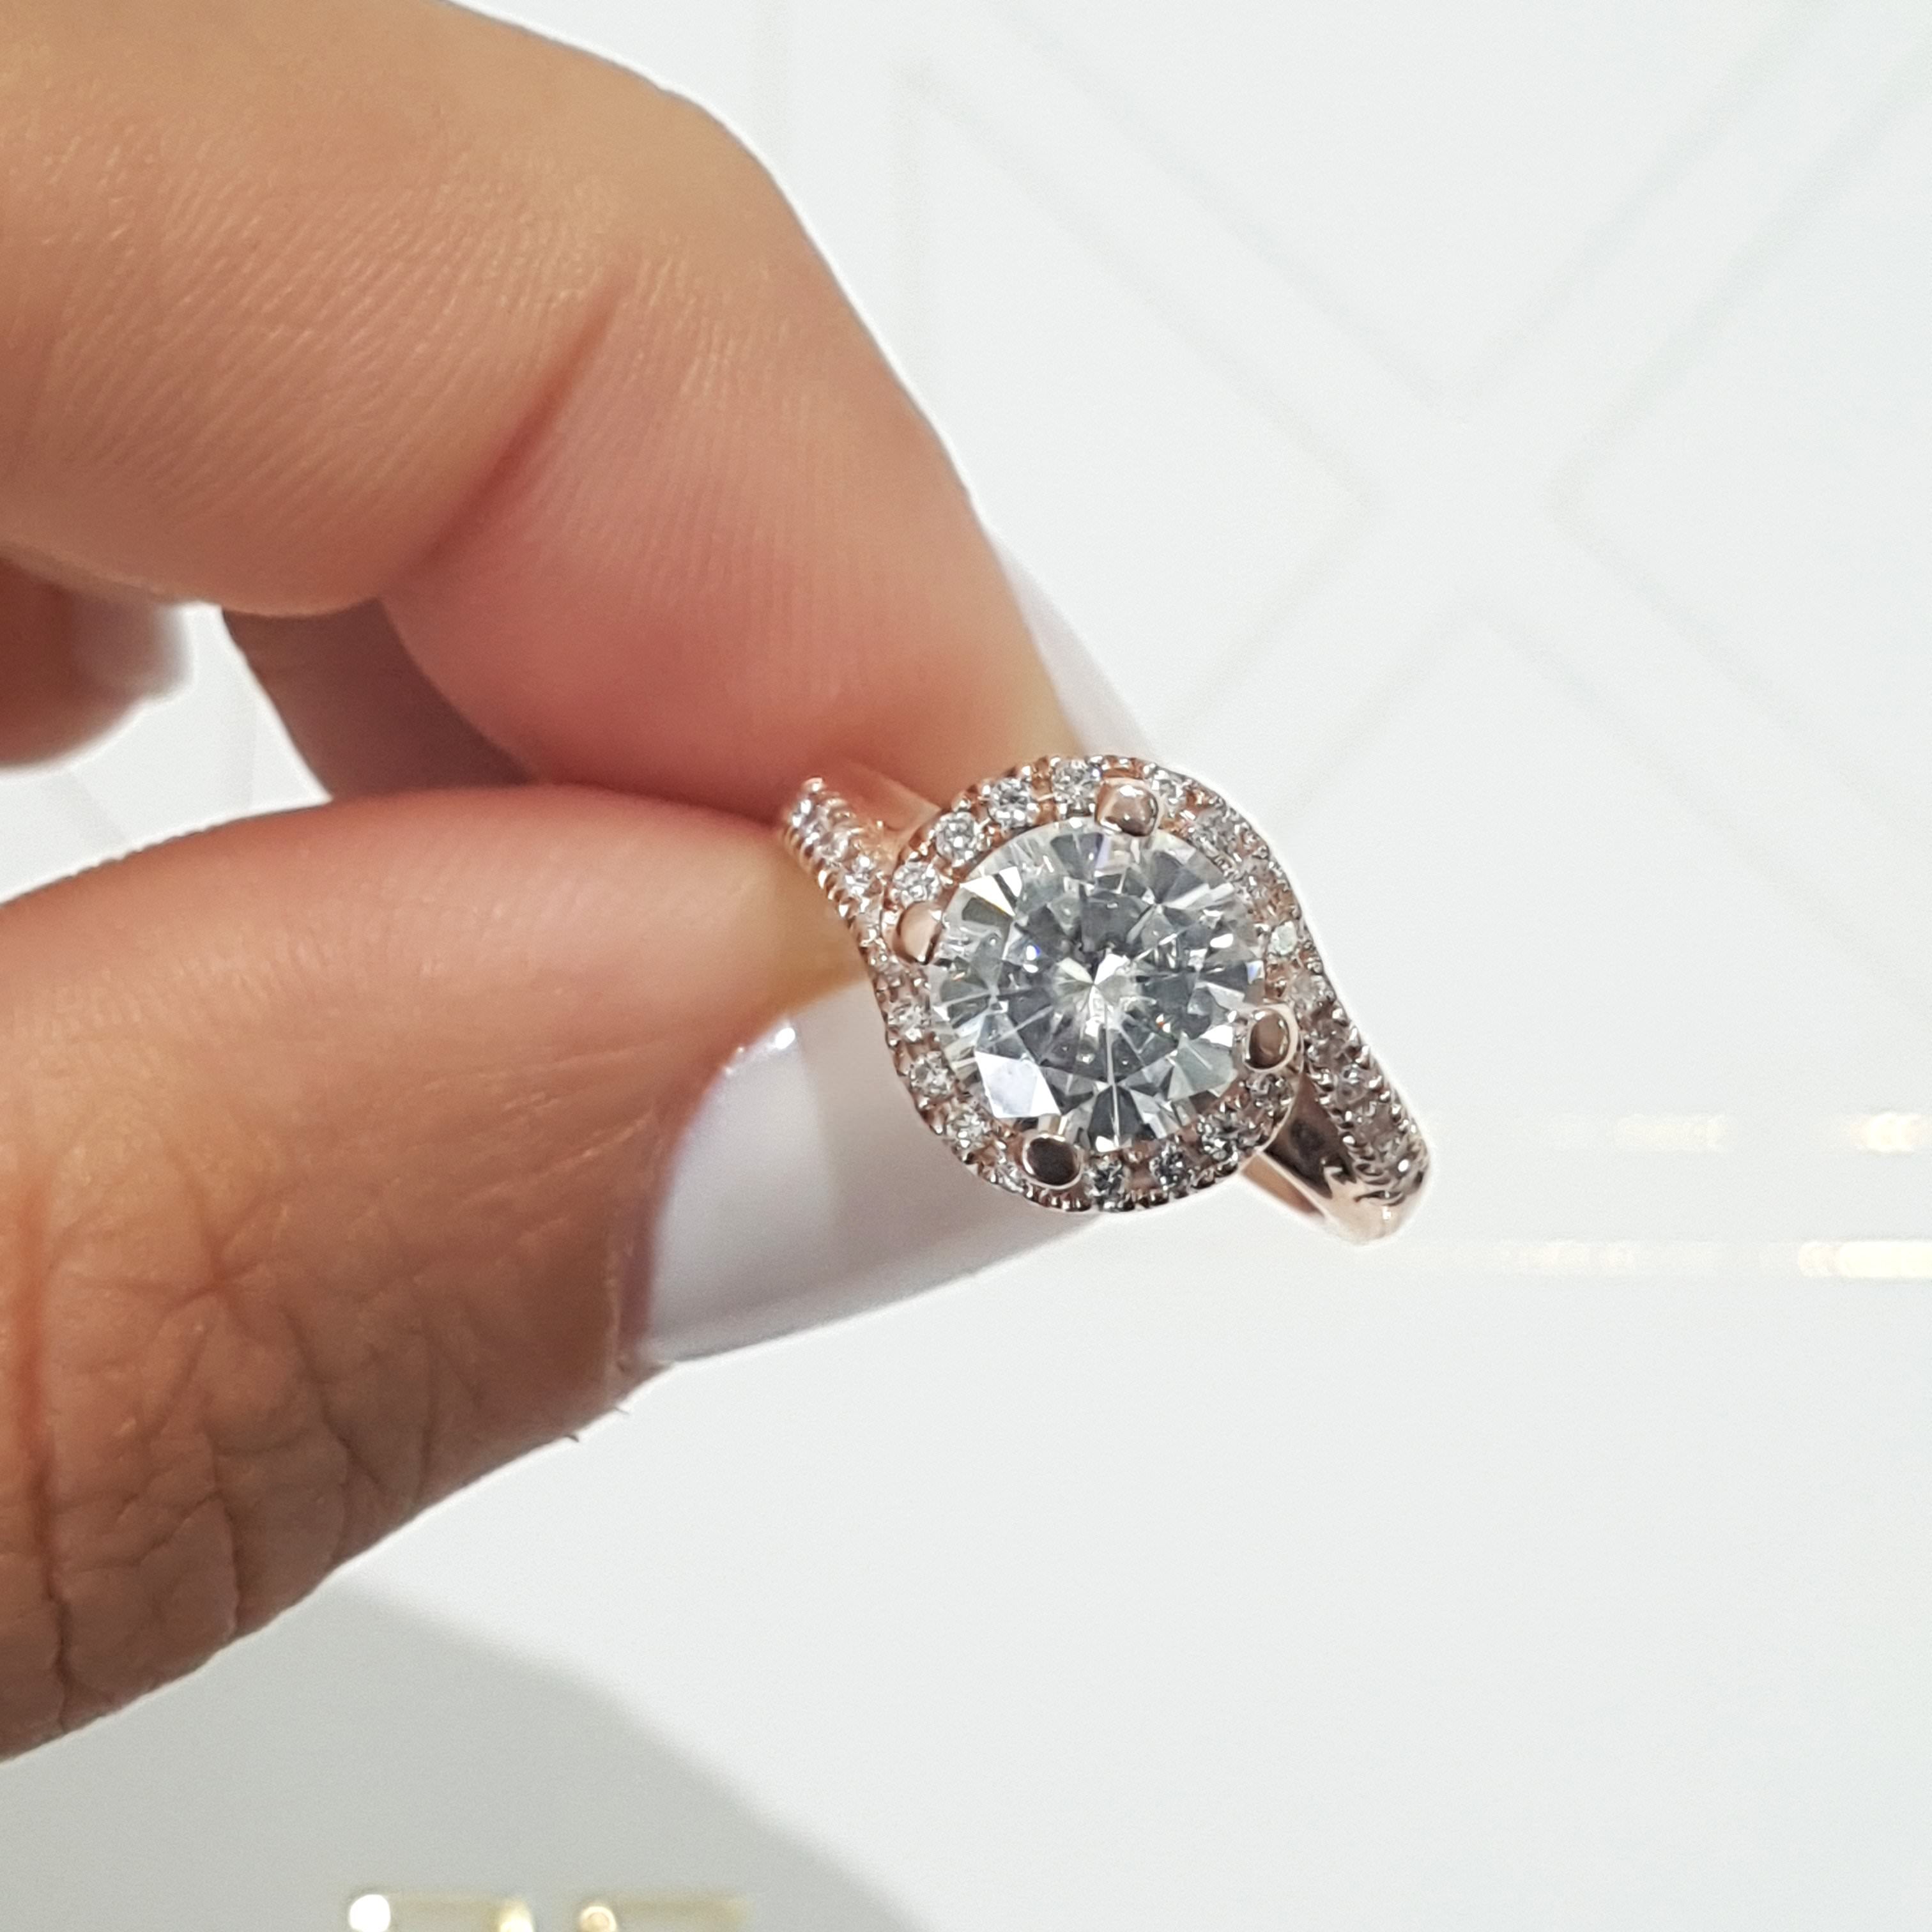 Stella Moissanite & Diamonds Ring   (1.75 Carat) -14K Rose Gold